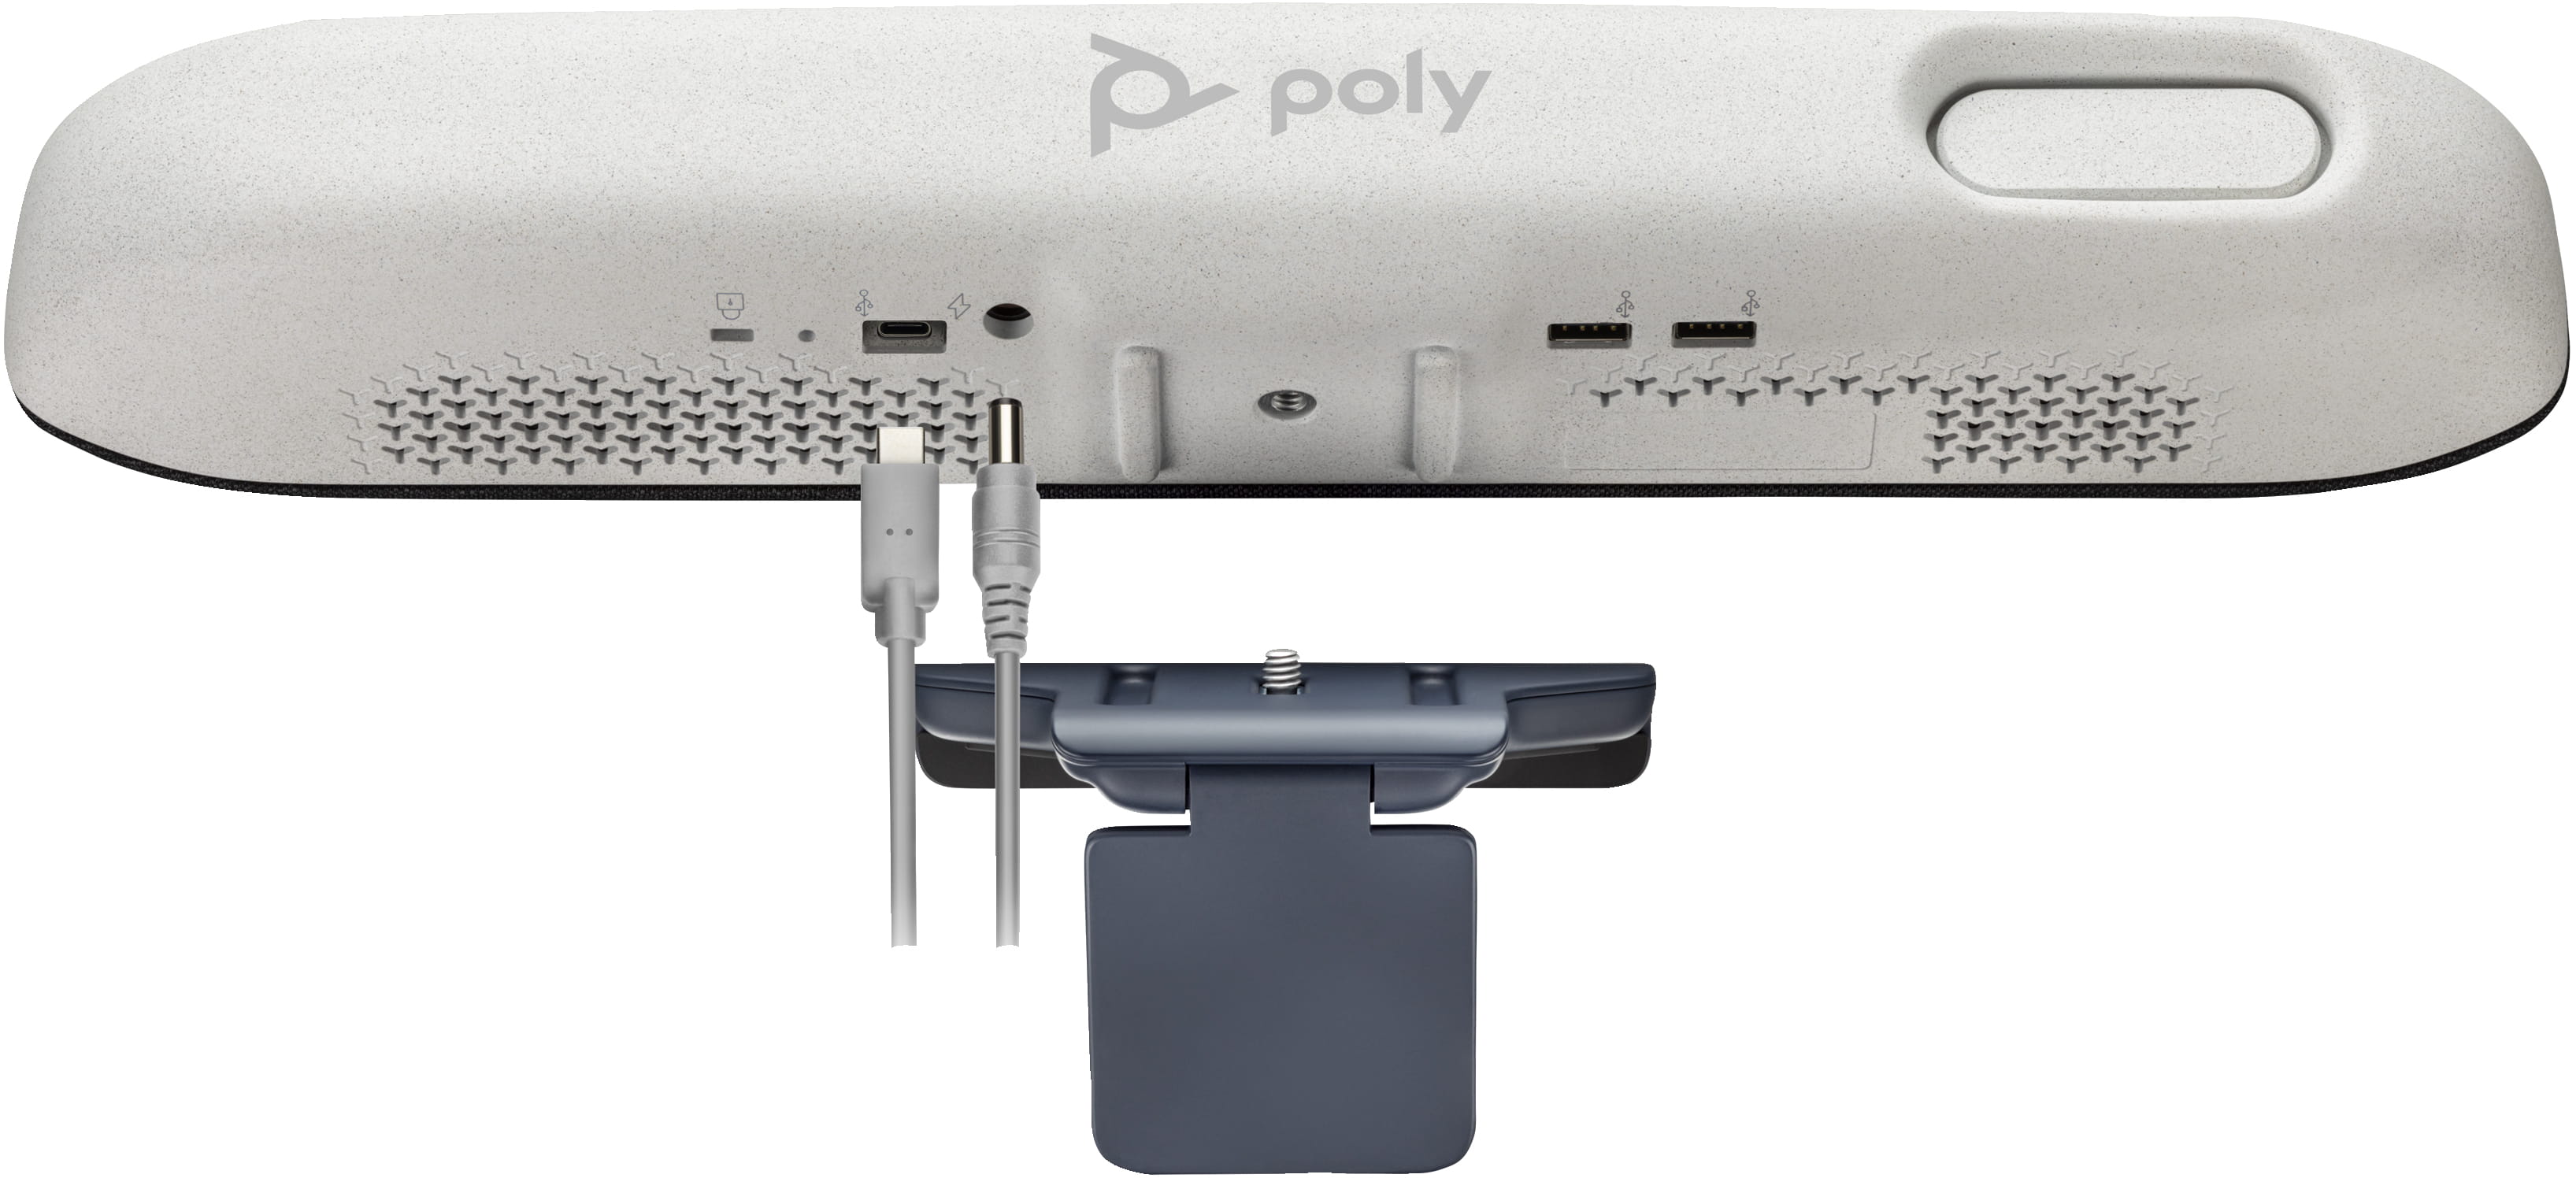 HP Poly - Befestigungskit (Klammer) - für LCD-Display